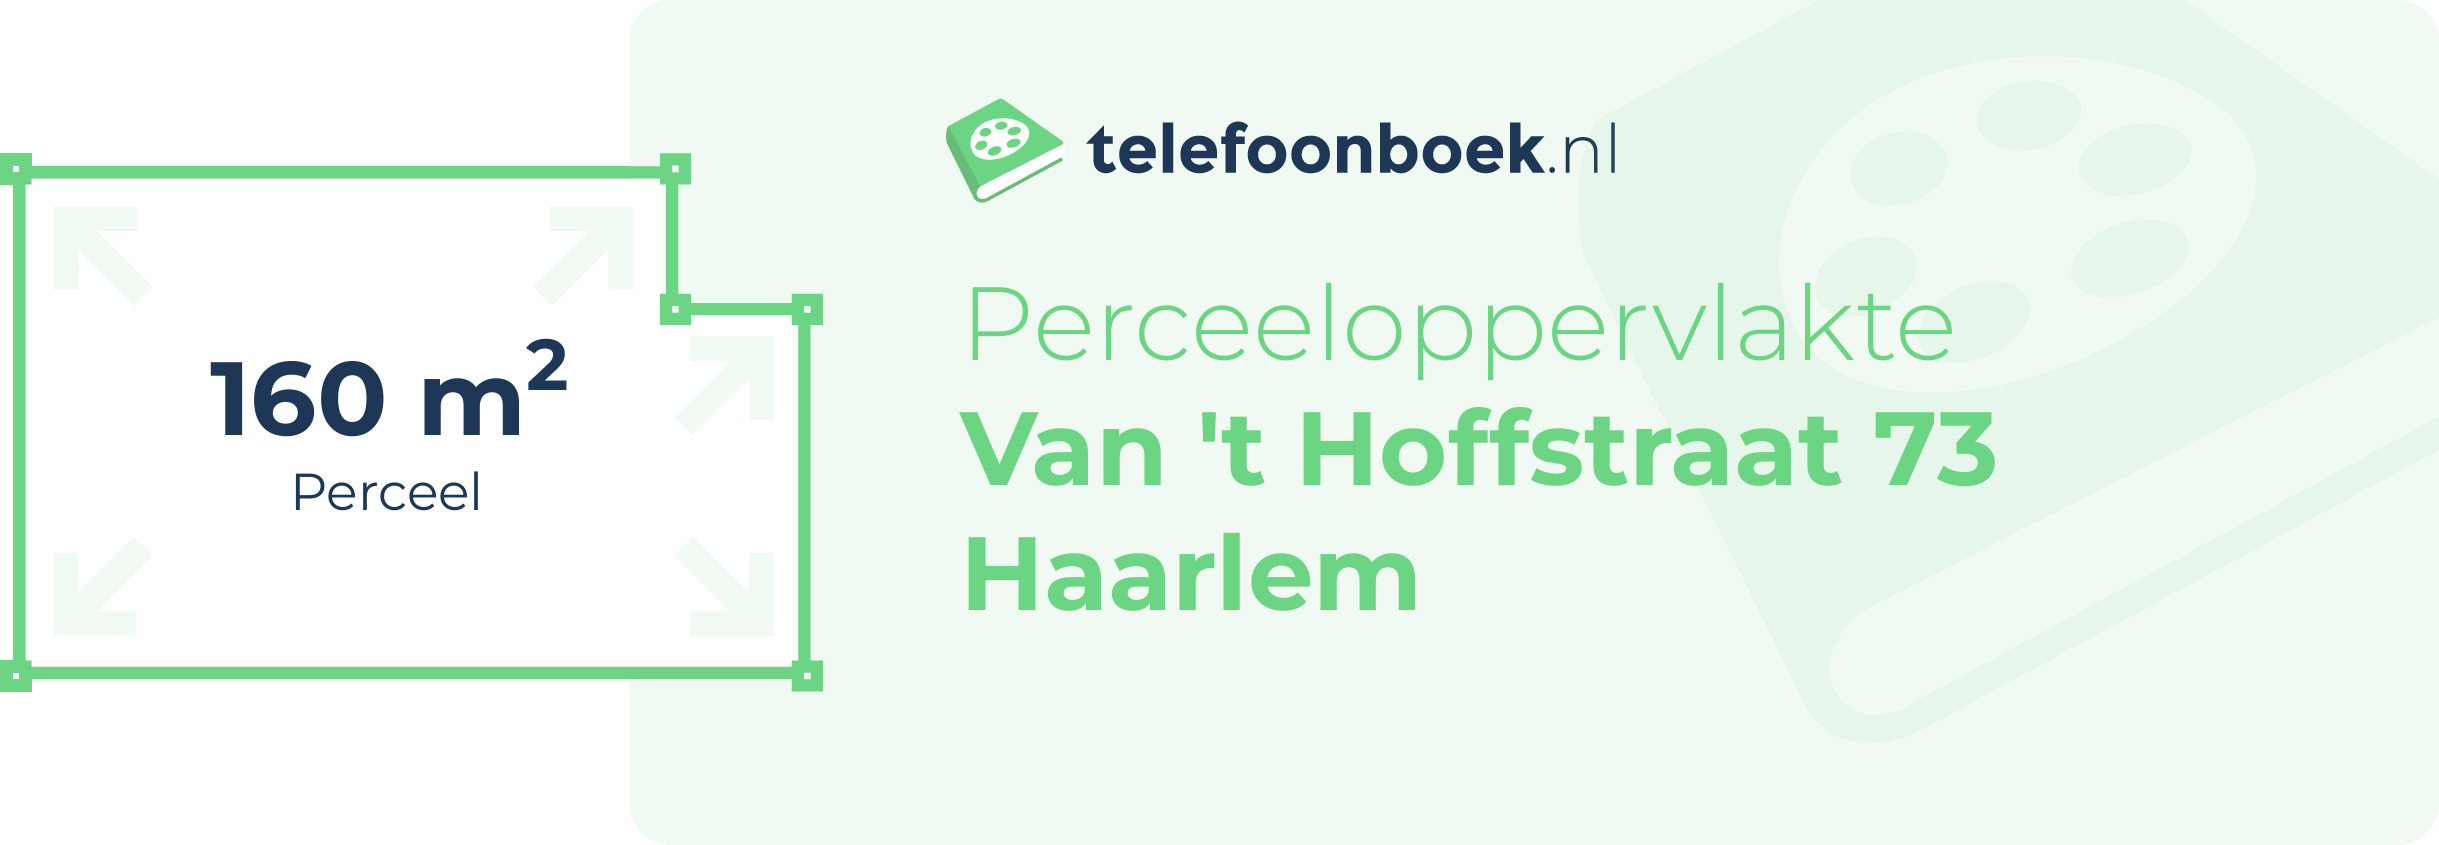 Perceeloppervlakte Van 't Hoffstraat 73 Haarlem